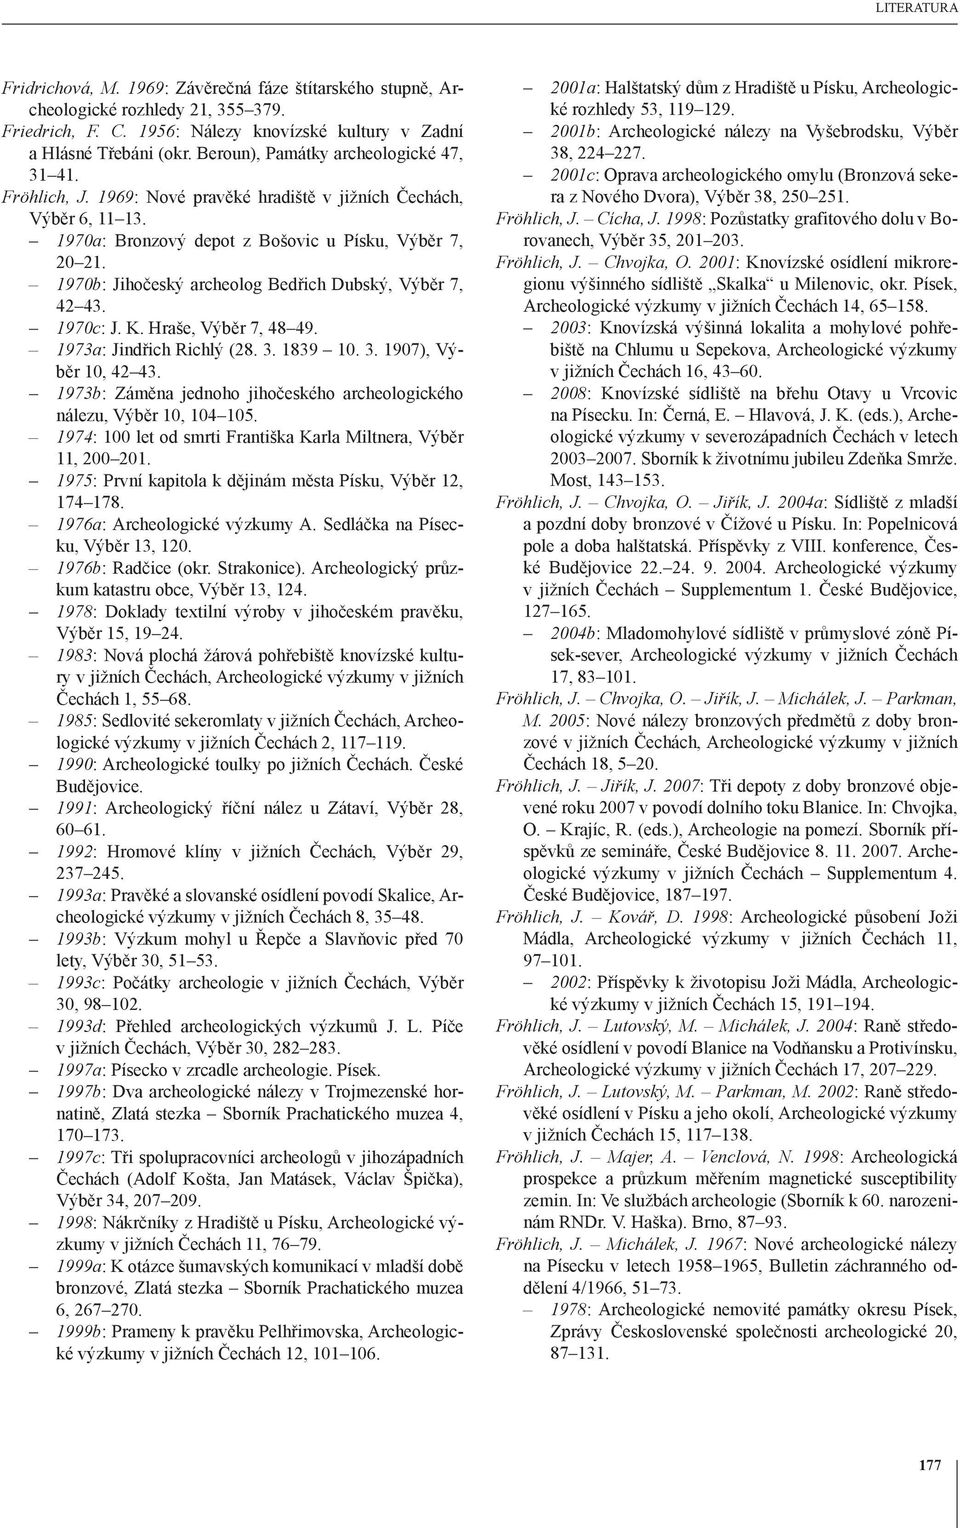 1970b: Jihočeský archeolog Bedřich Dubský, Výběr 7, 42 43. 1970c: J. K. Hraše, Výběr 7, 48 49. 1973a: Jindřich Richlý (28. 3. 1839 10. 3. 1907), Výběr 10, 42 43.